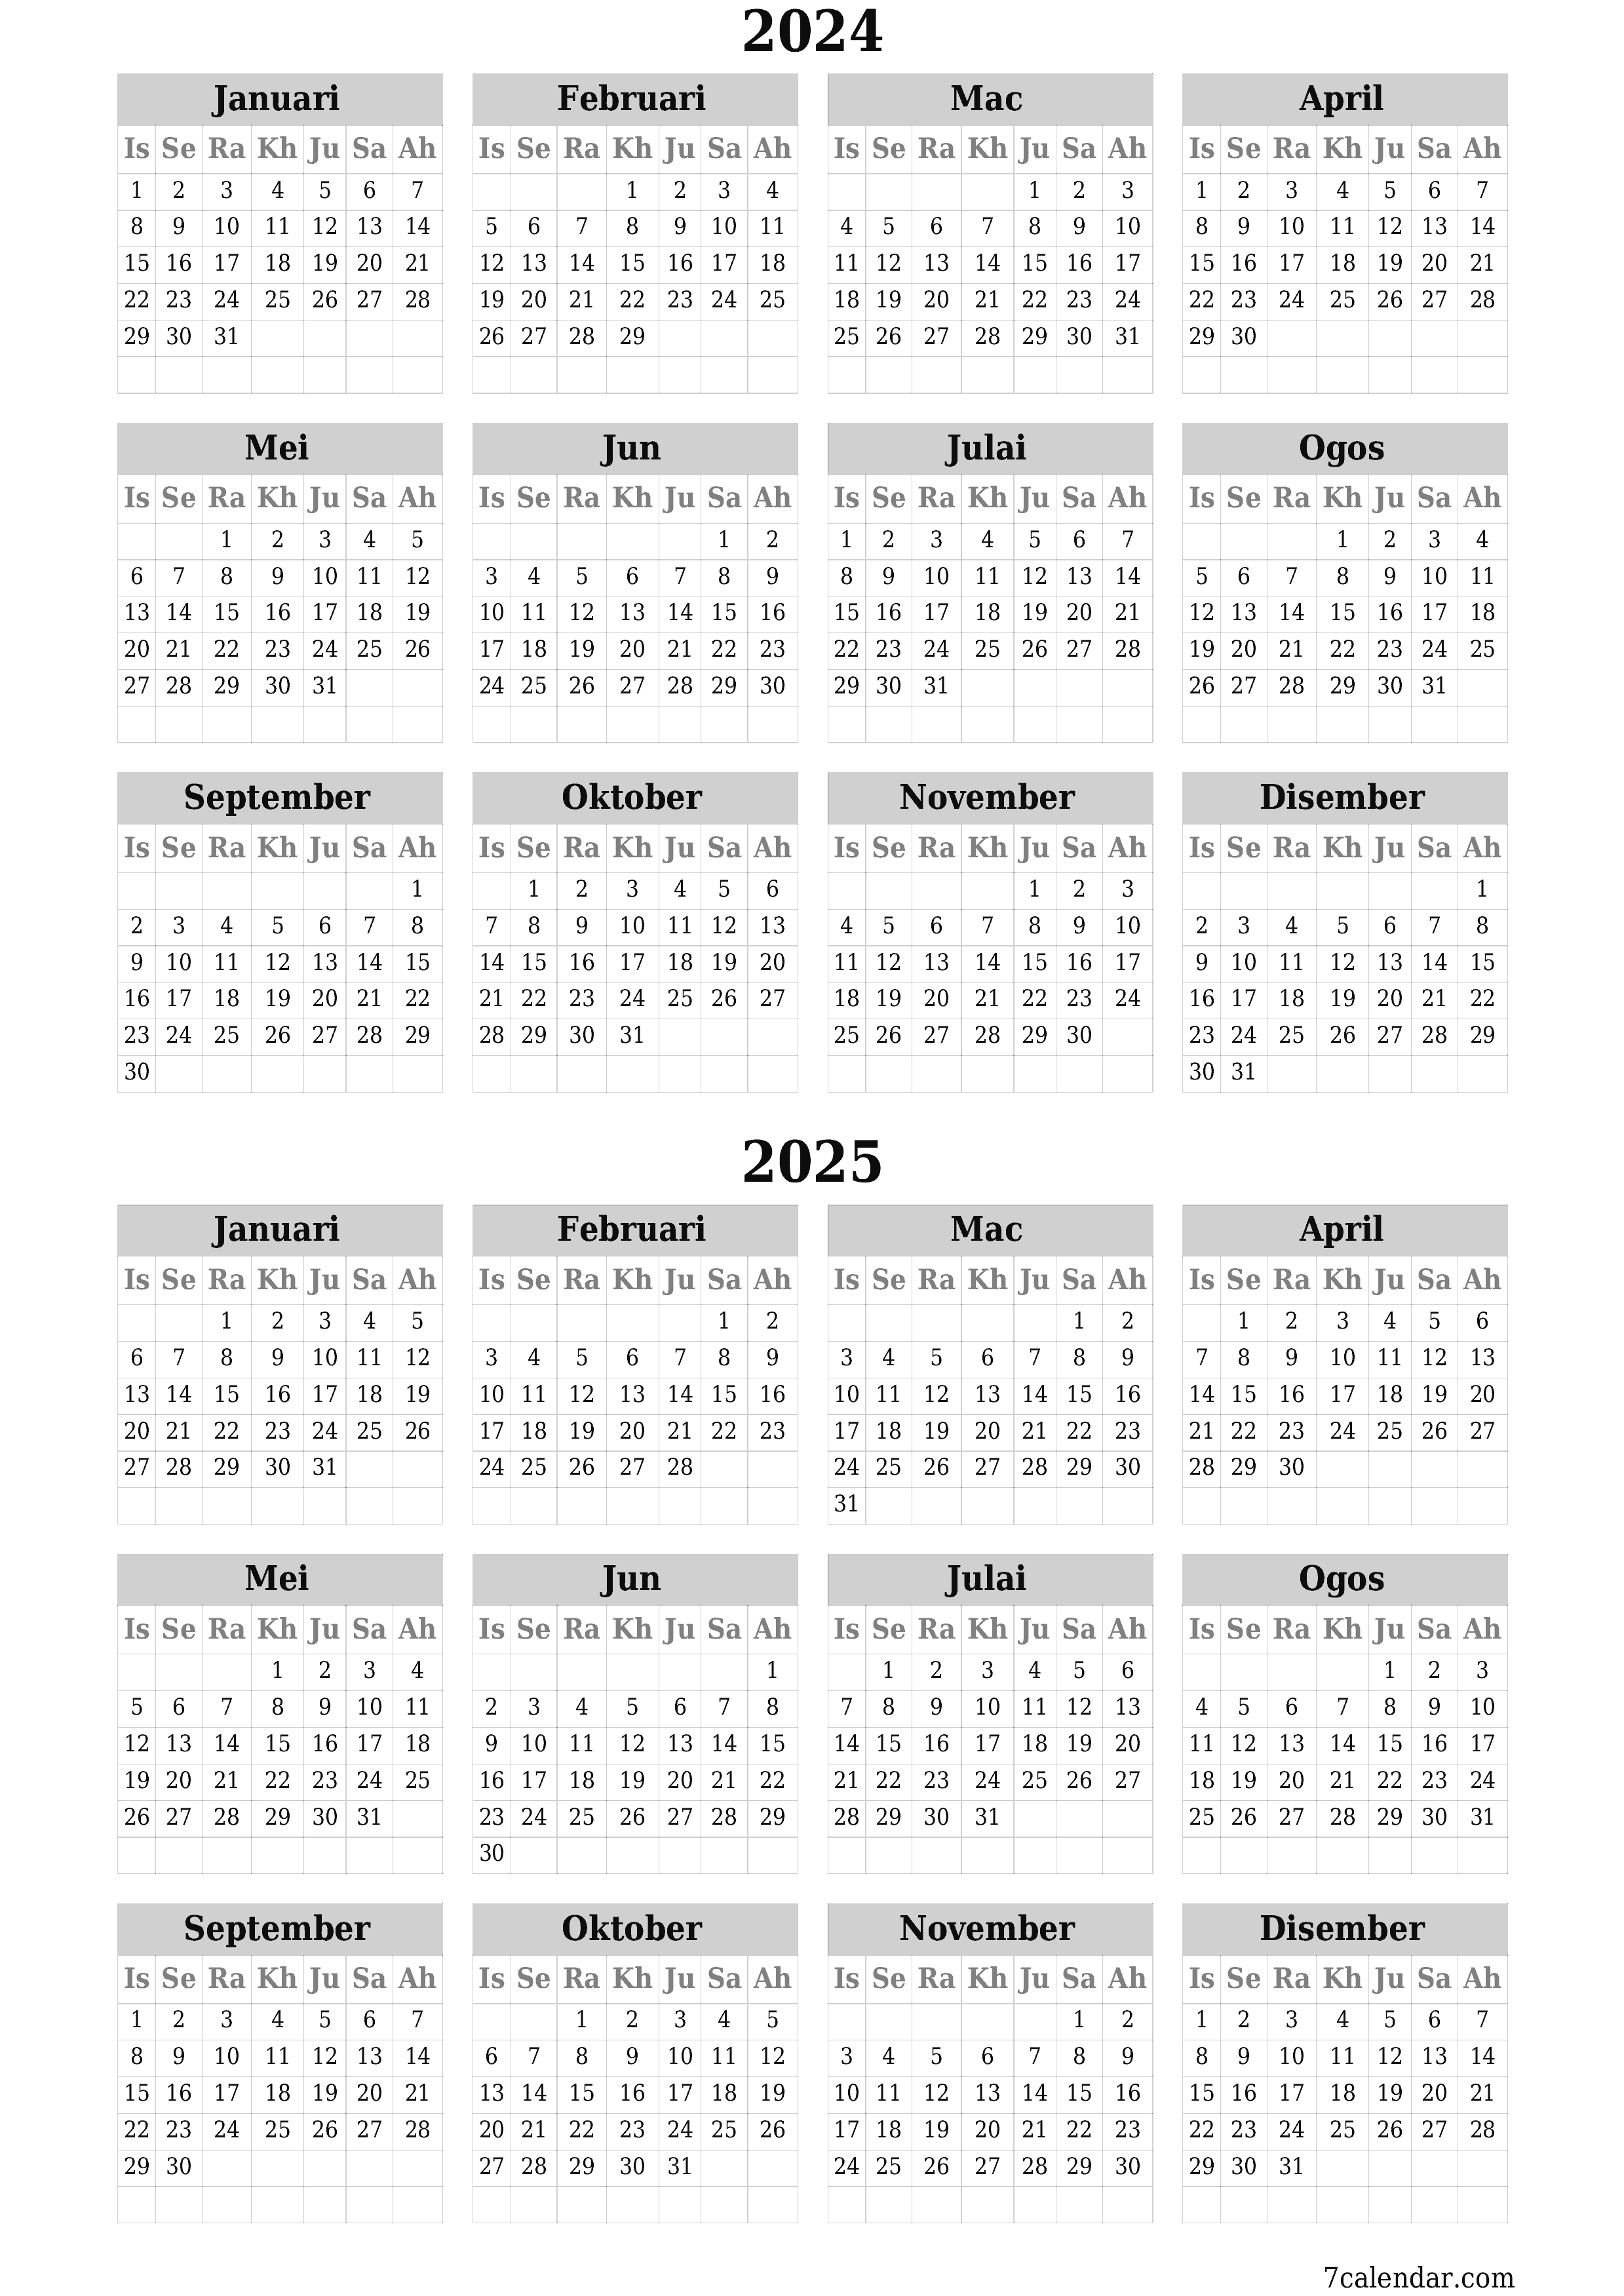  boleh cetak dinding templat percumamenegak Tahunan kalendar Mac (Mar) 2024